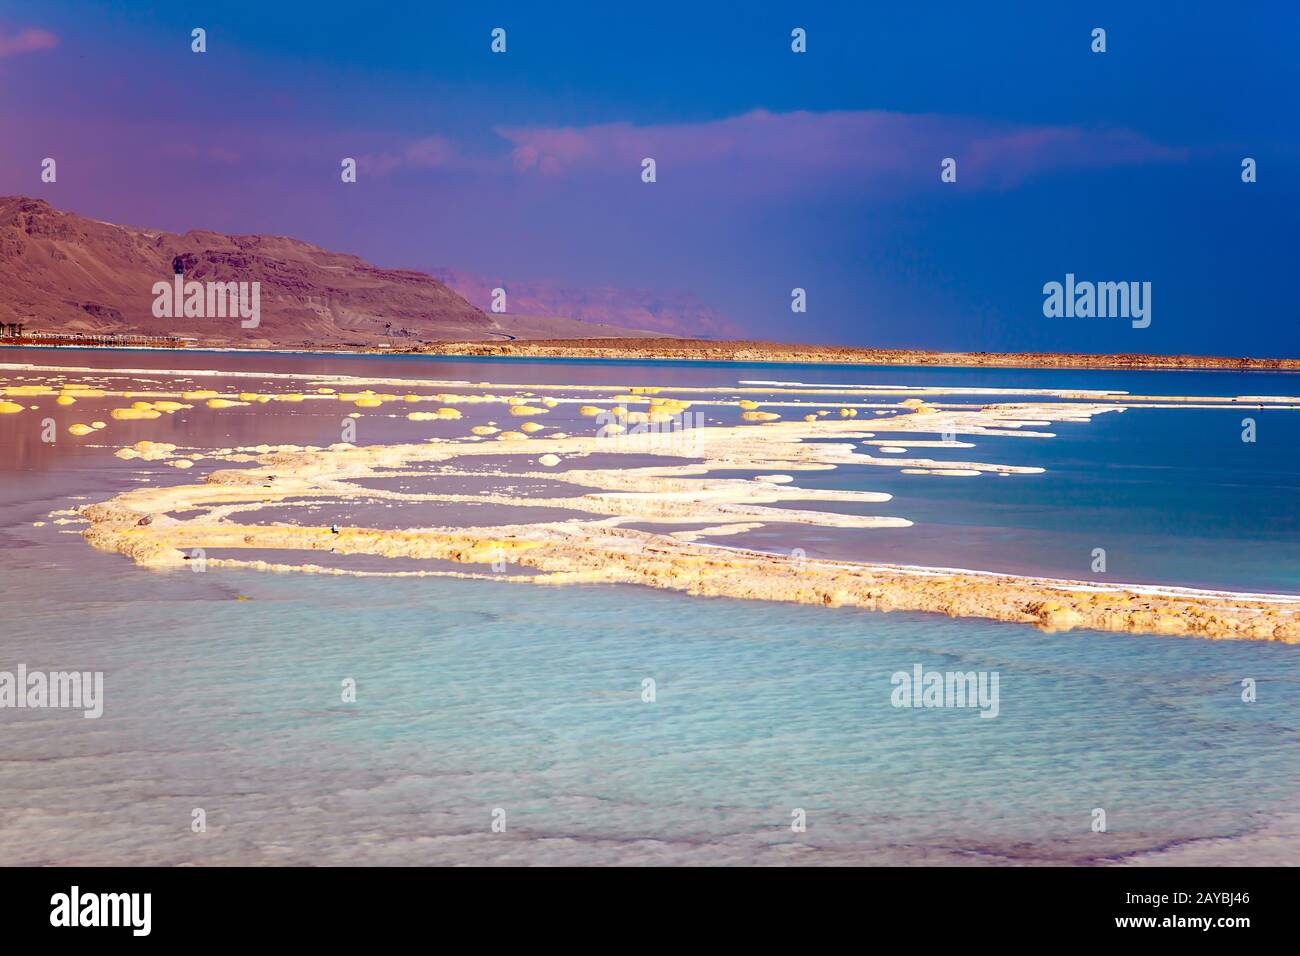 Therapeutic Dead Sea Stock Photo